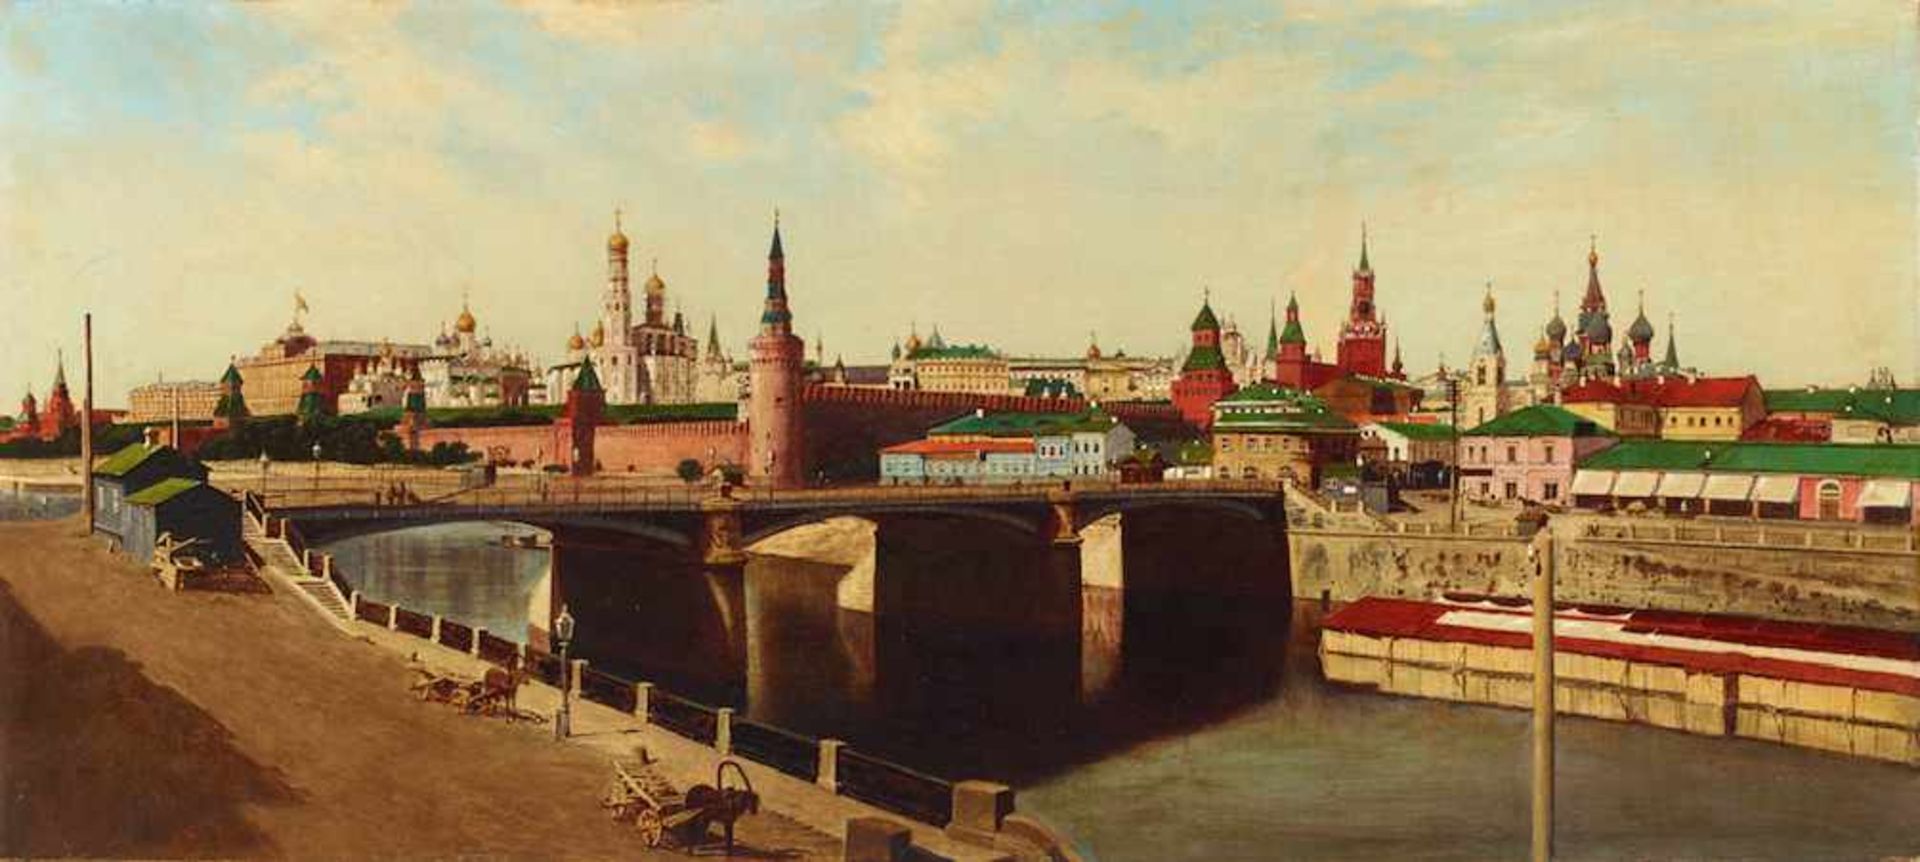 Fotorealistische Ansicht Moskaus um 1900Öl/Leinwand. Detailreich und stimmungsvoll im